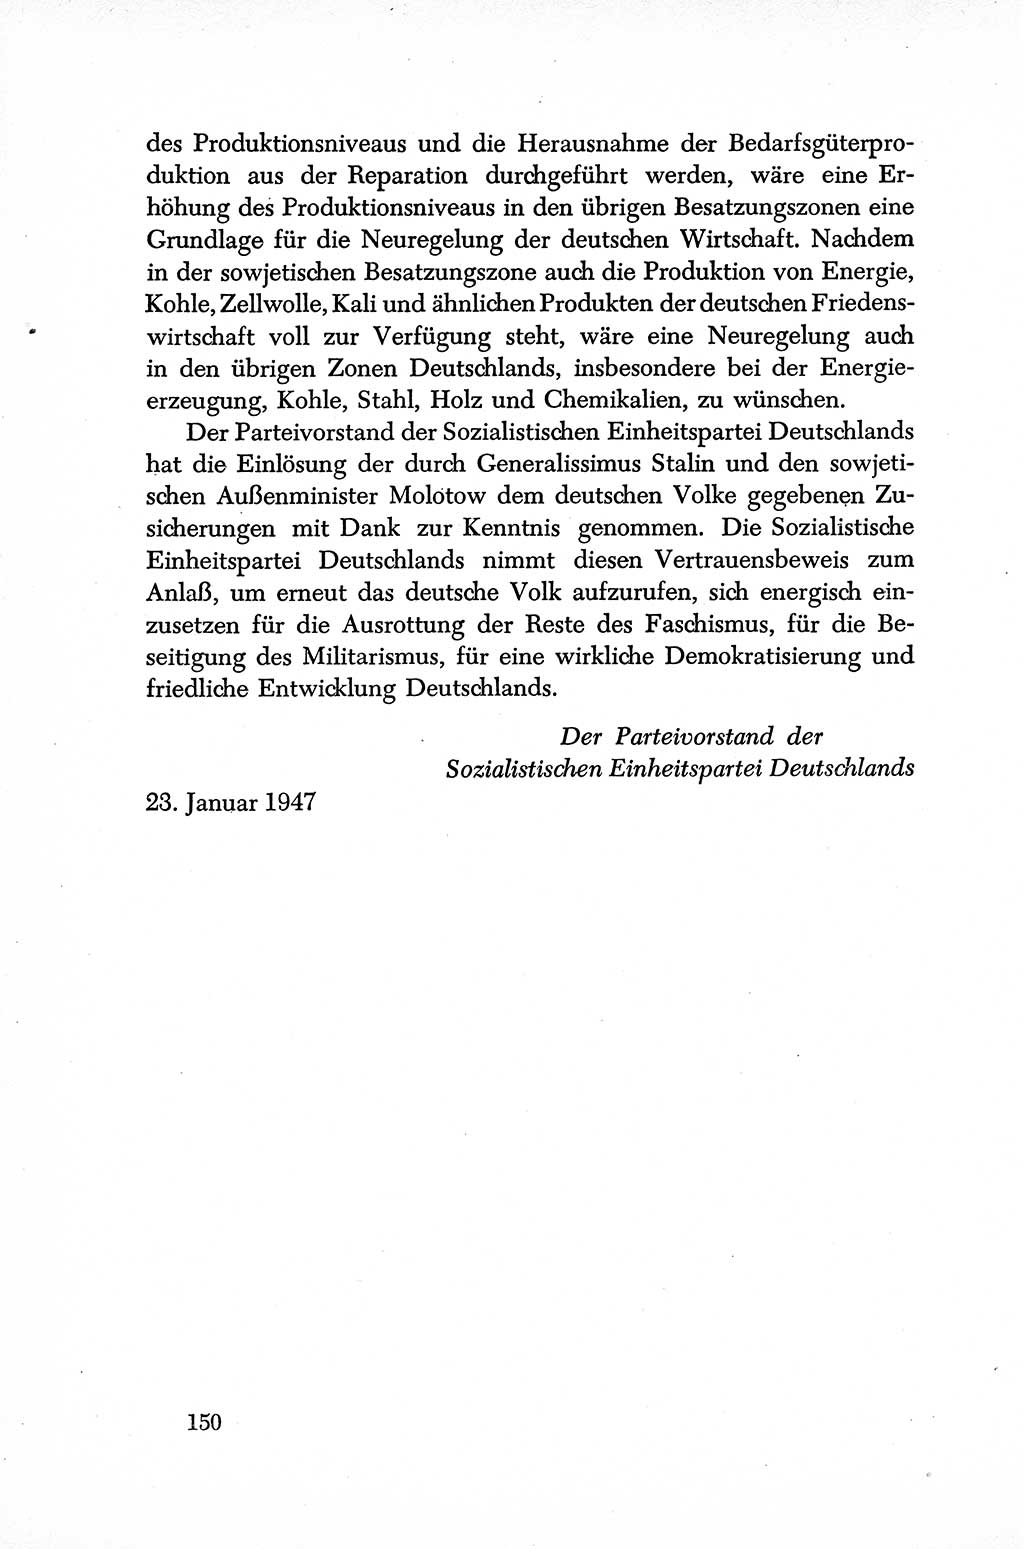 Dokumente der Sozialistischen Einheitspartei Deutschlands (SED) [Sowjetische Besatzungszone (SBZ) Deutschlands] 1946-1948, Seite 150 (Dok. SED SBZ Dtl. 1946-1948, S. 150)